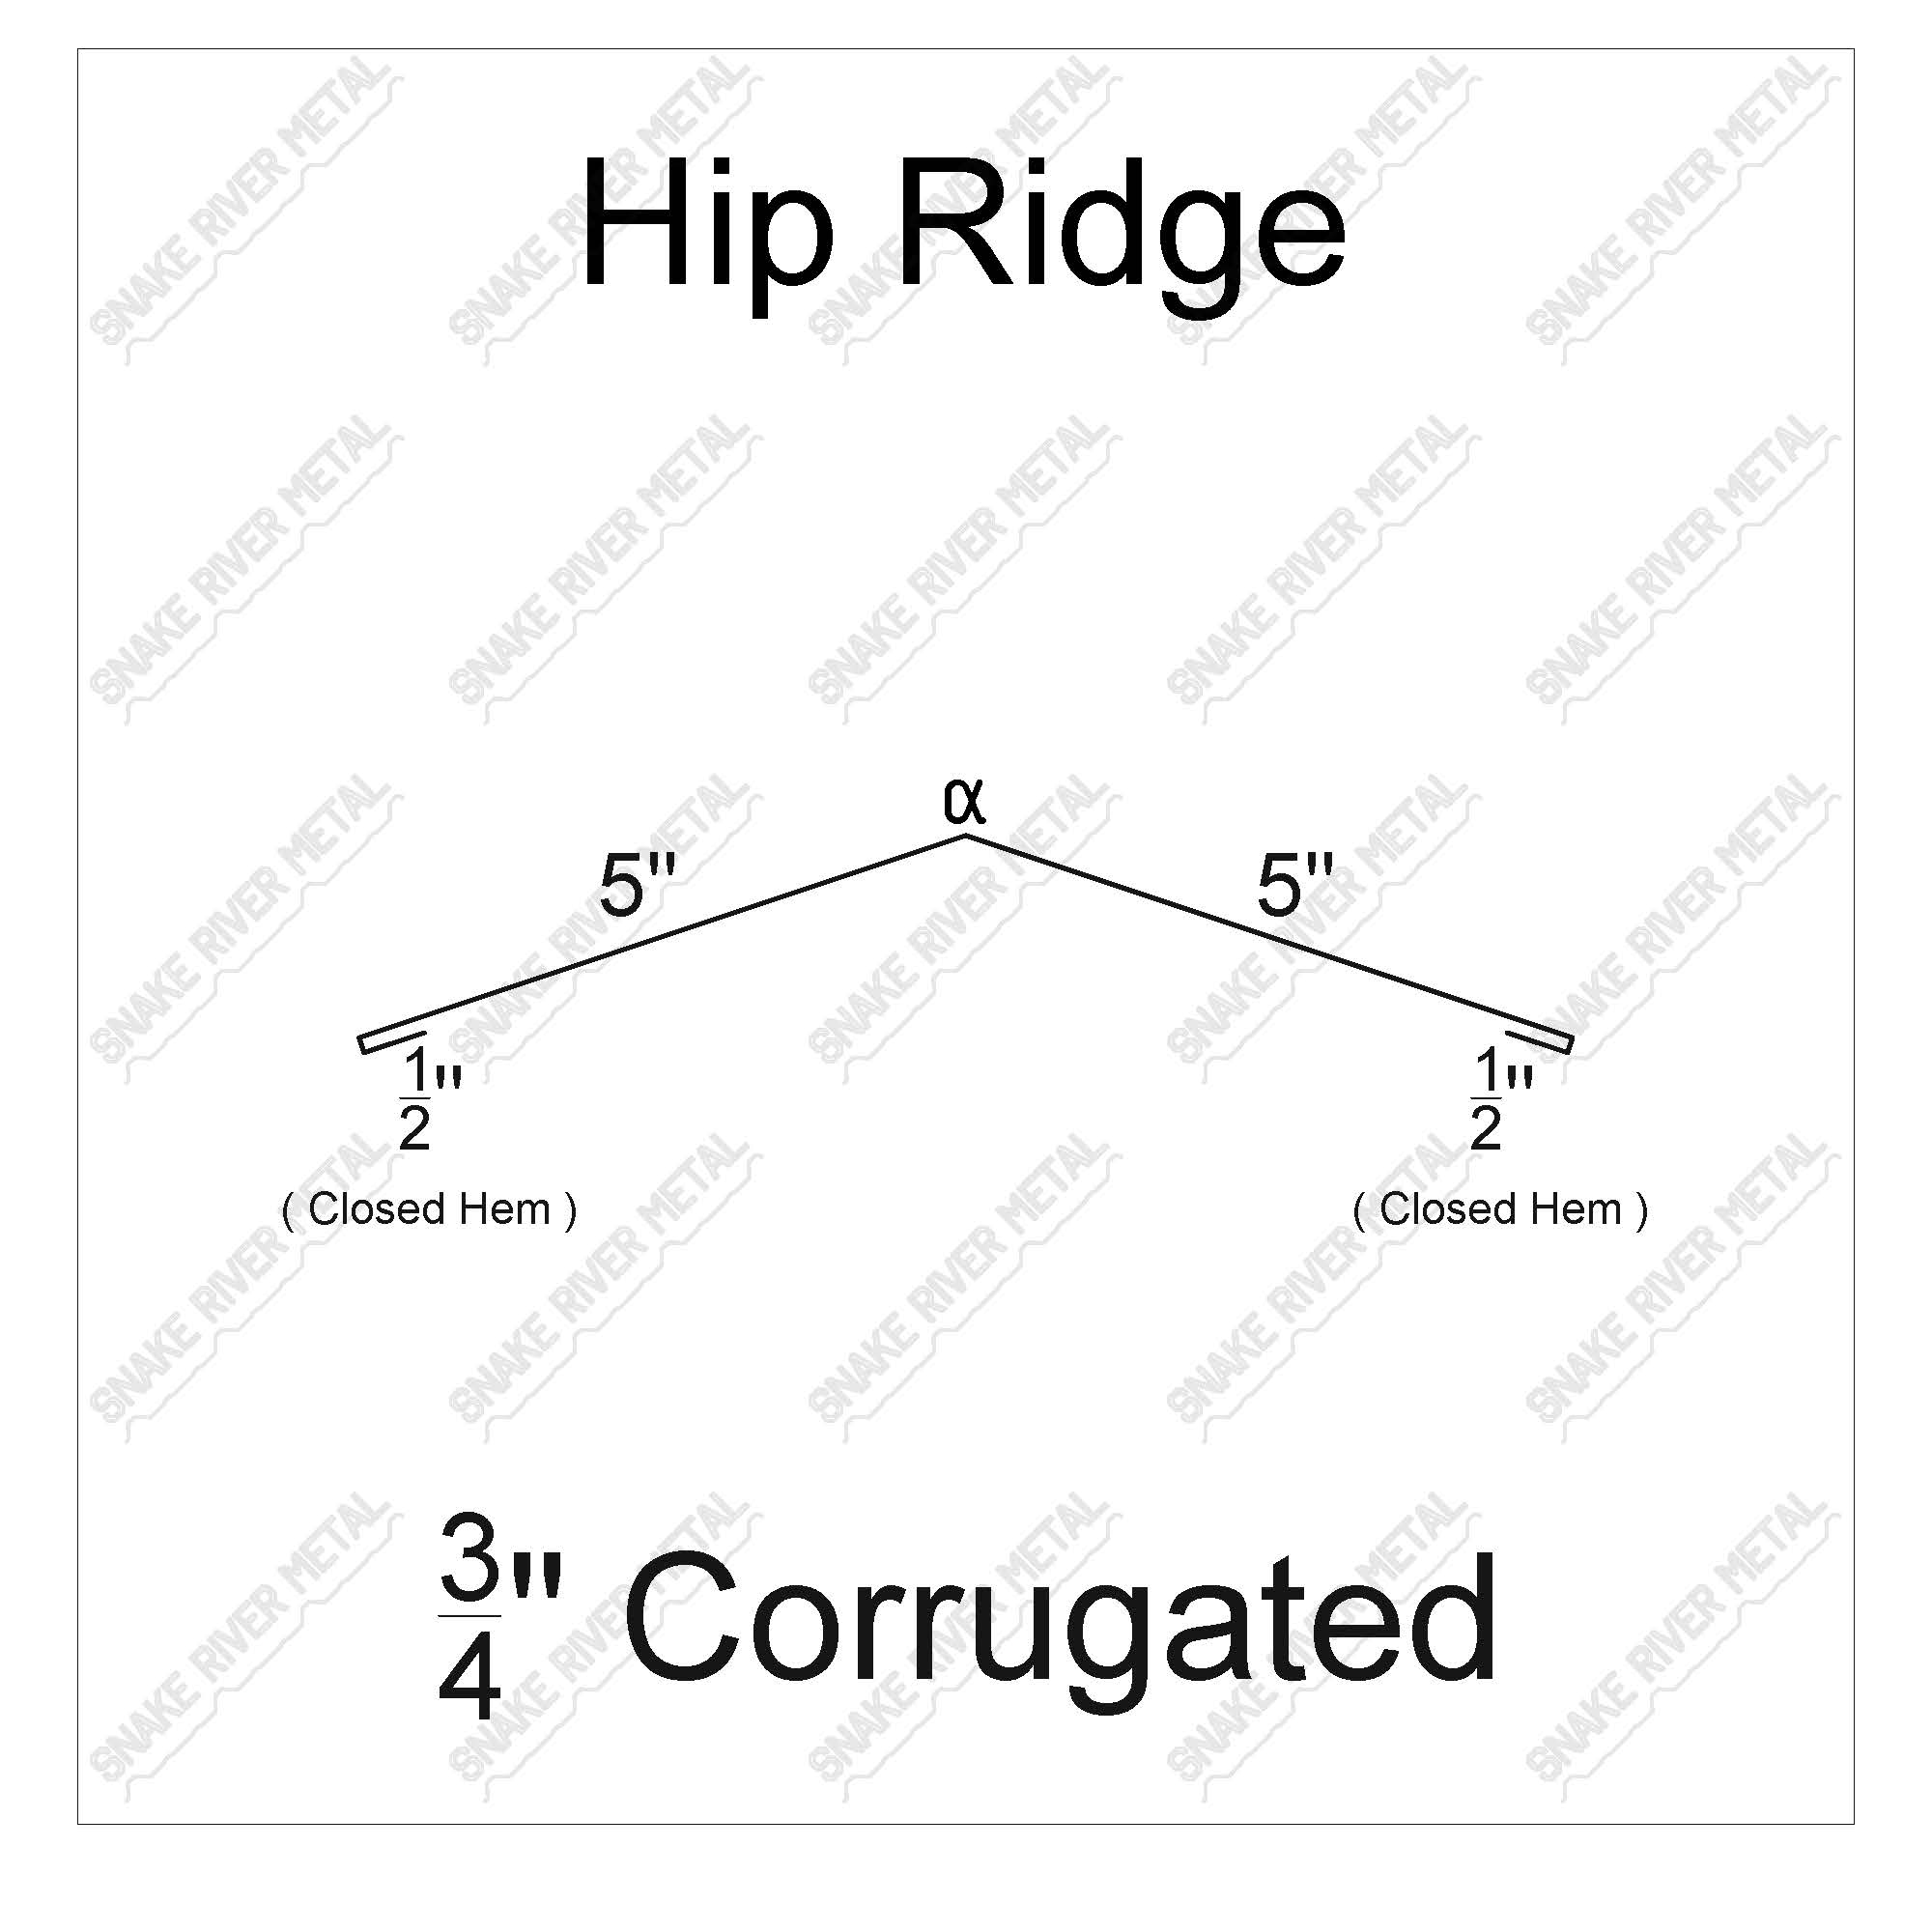 Hip Ridge - Corrugated Trim